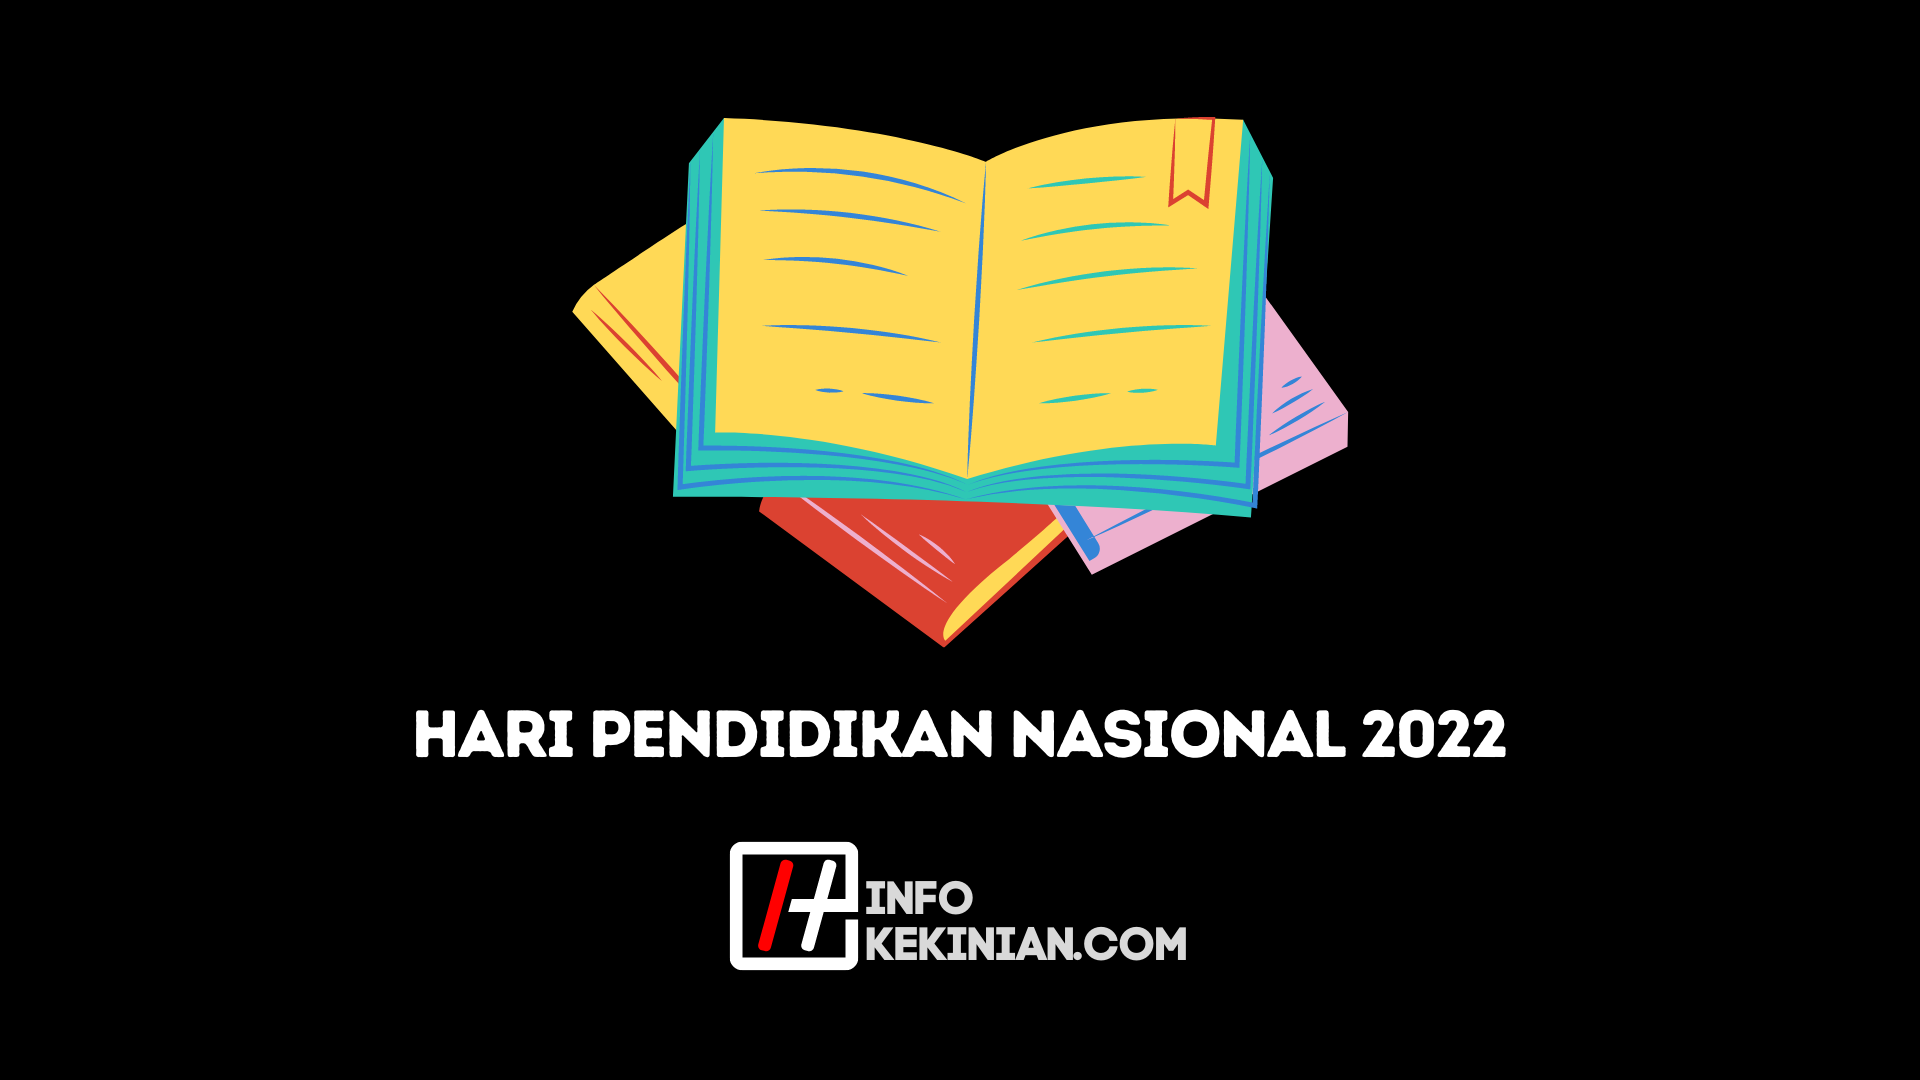 Hari Pendidikan Nasional 2022